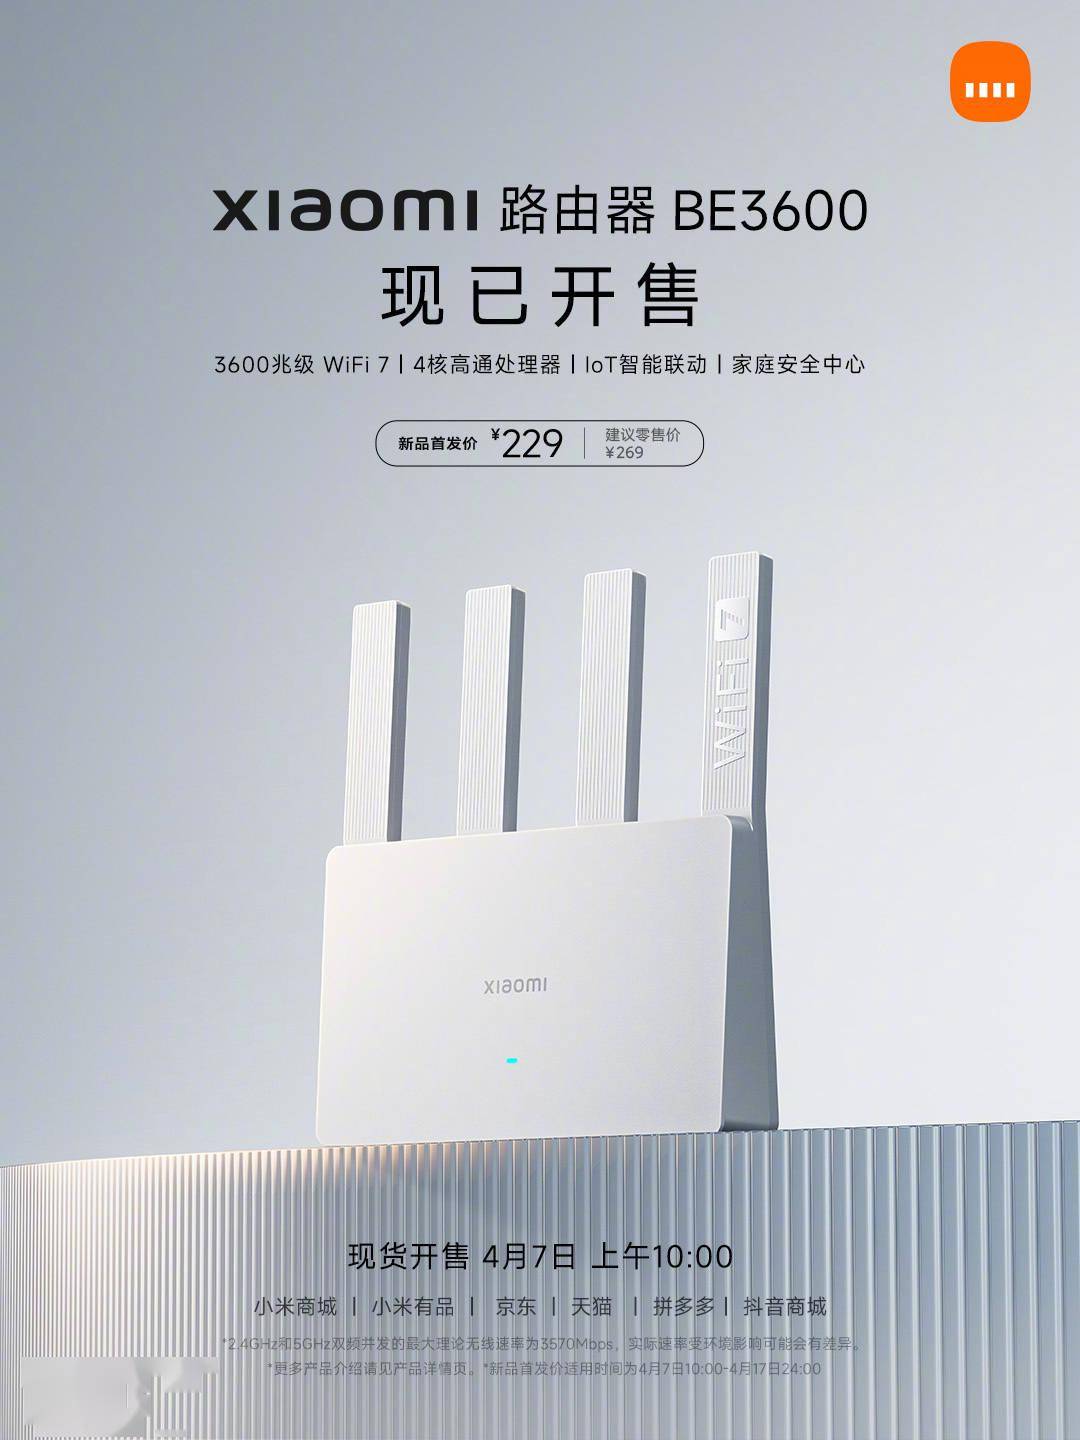 小米WiFi 7路由器BE3600千兆版开售 支持128台设备同时在线